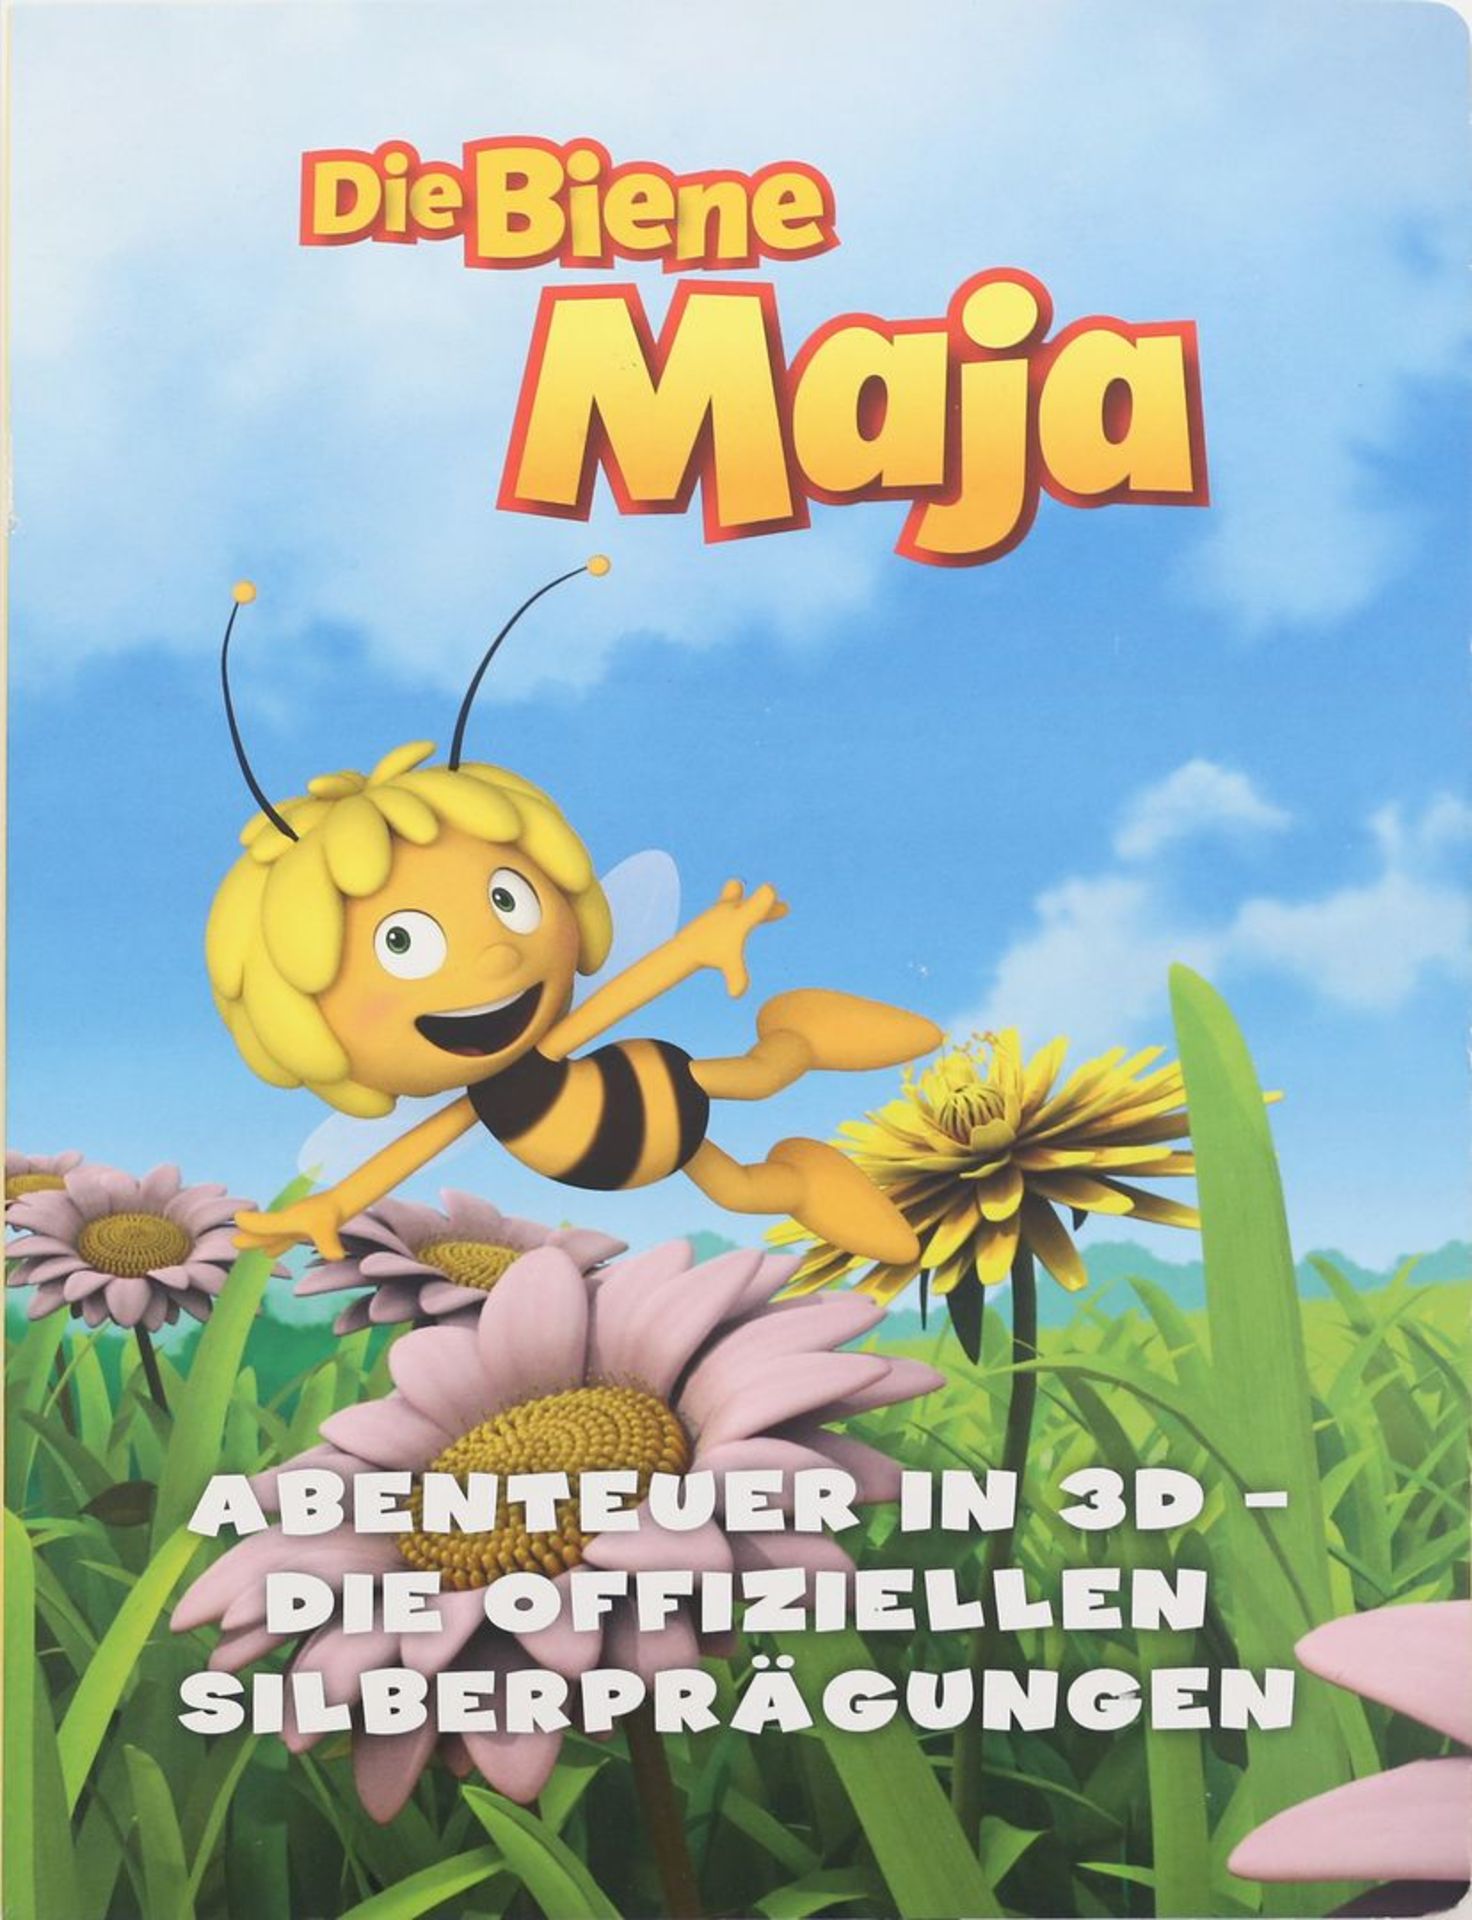 Sammlung Gedenkmedaillen "Die Biene Maja - Abenteuer in 3D". - Bild 2 aus 2